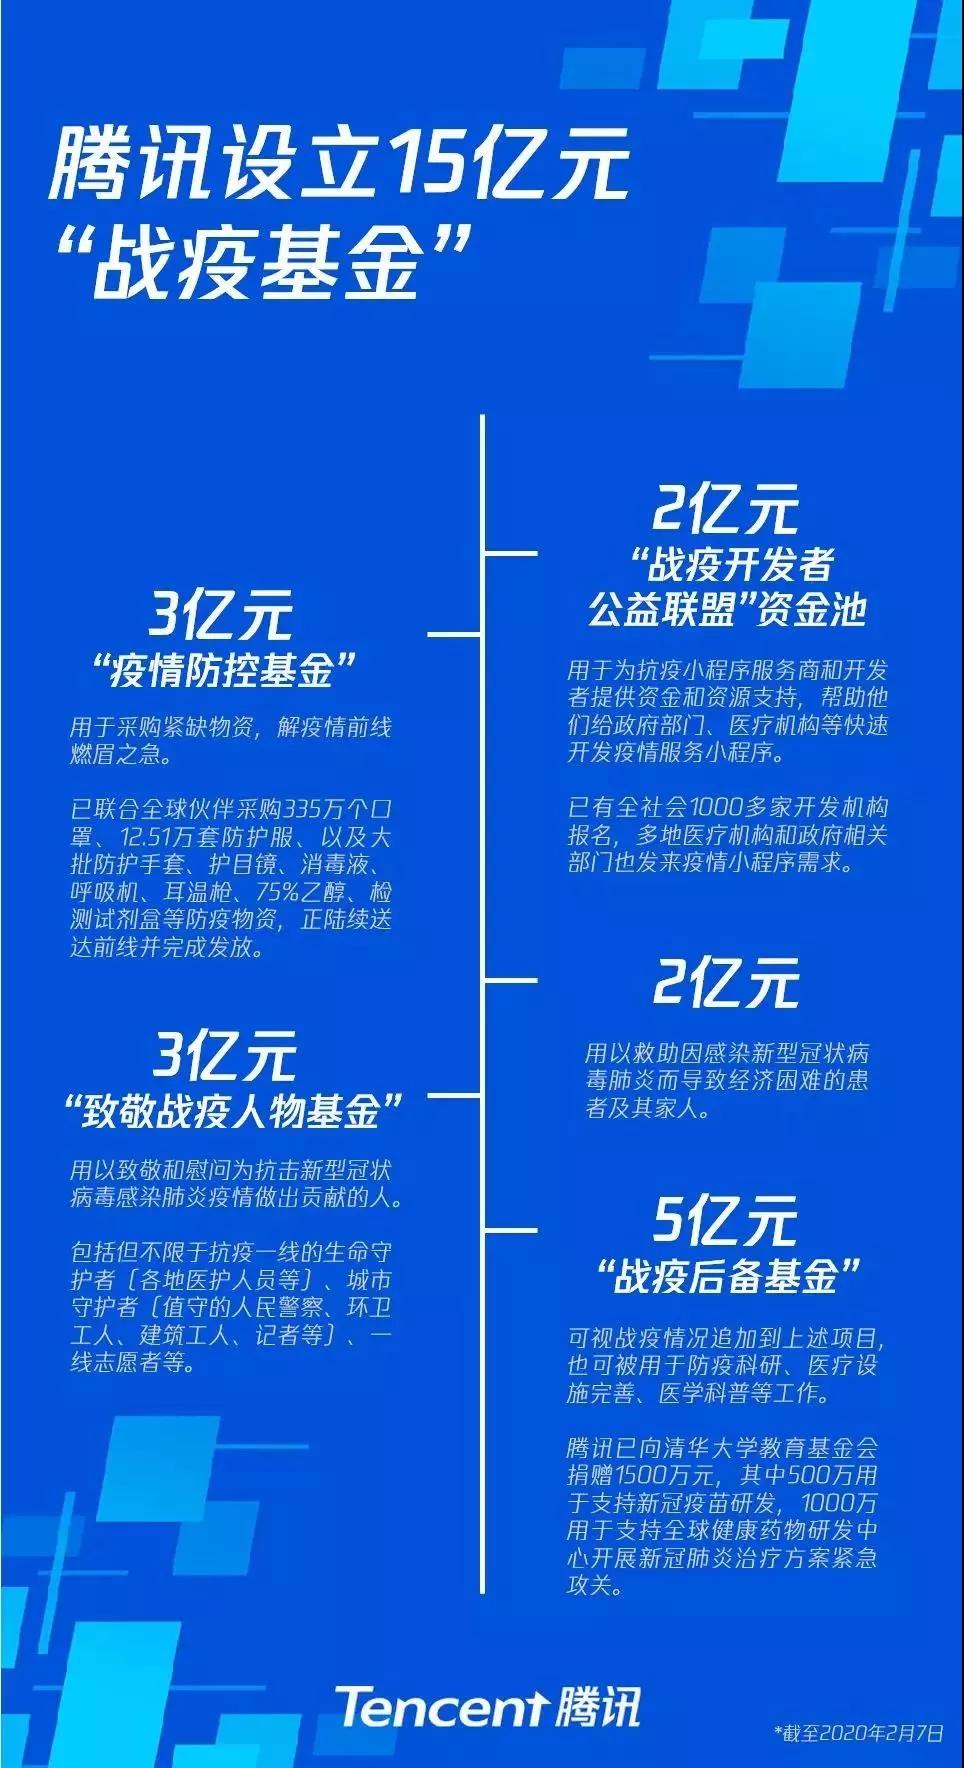 华为武汉招聘_芯片职位平均薪资10420元,到2020年,仍存30万人才缺口(5)